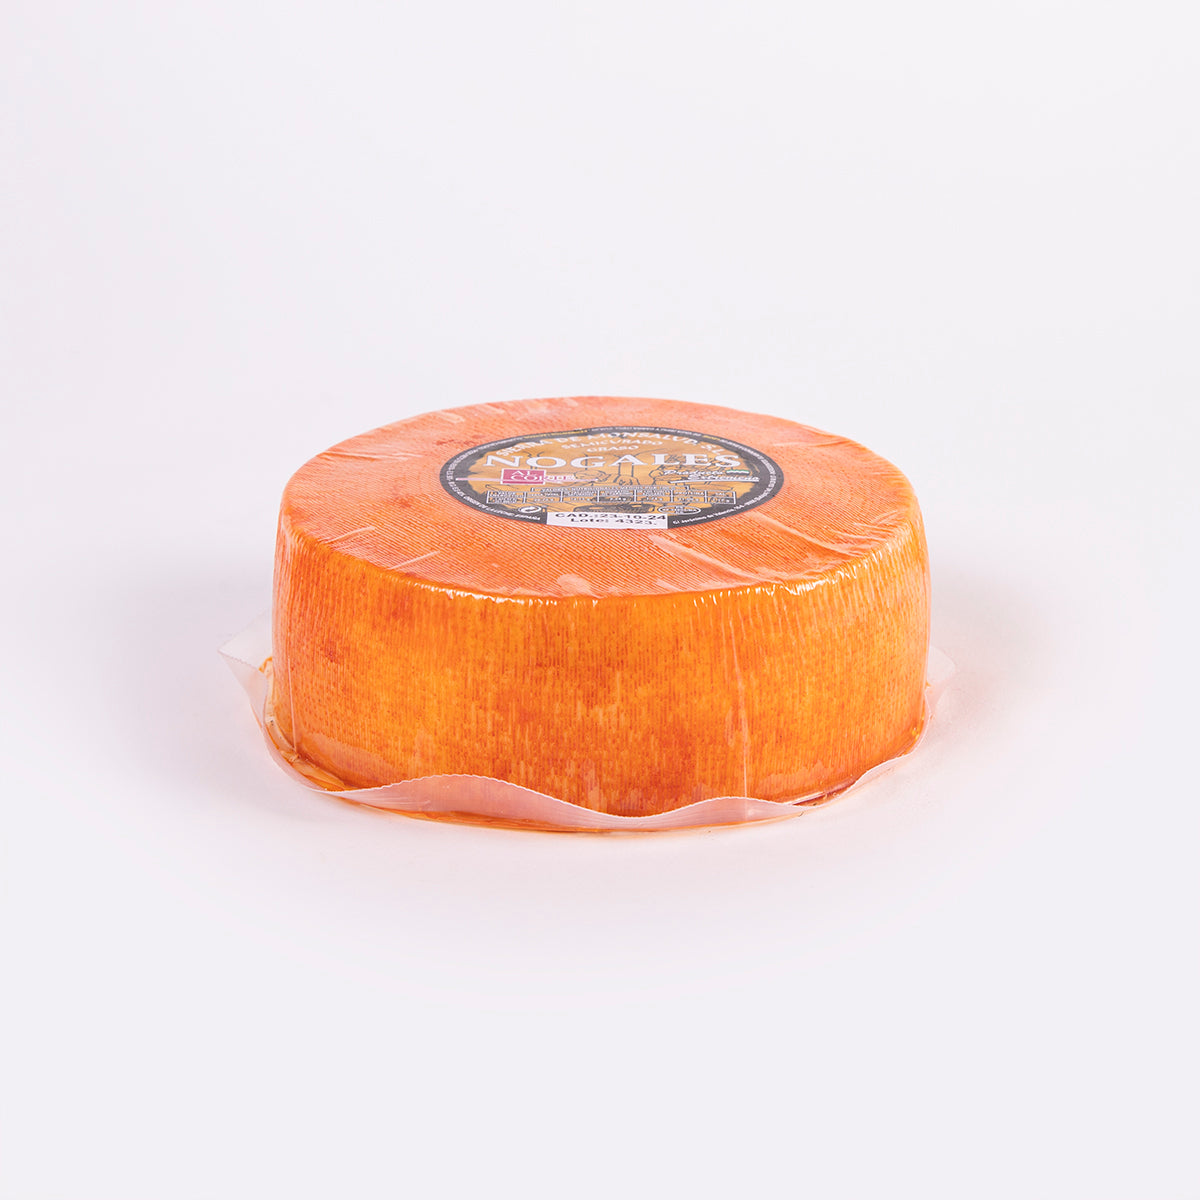 detalle de la corteza con pimentón del queso mezcla vaca y cabra nogales